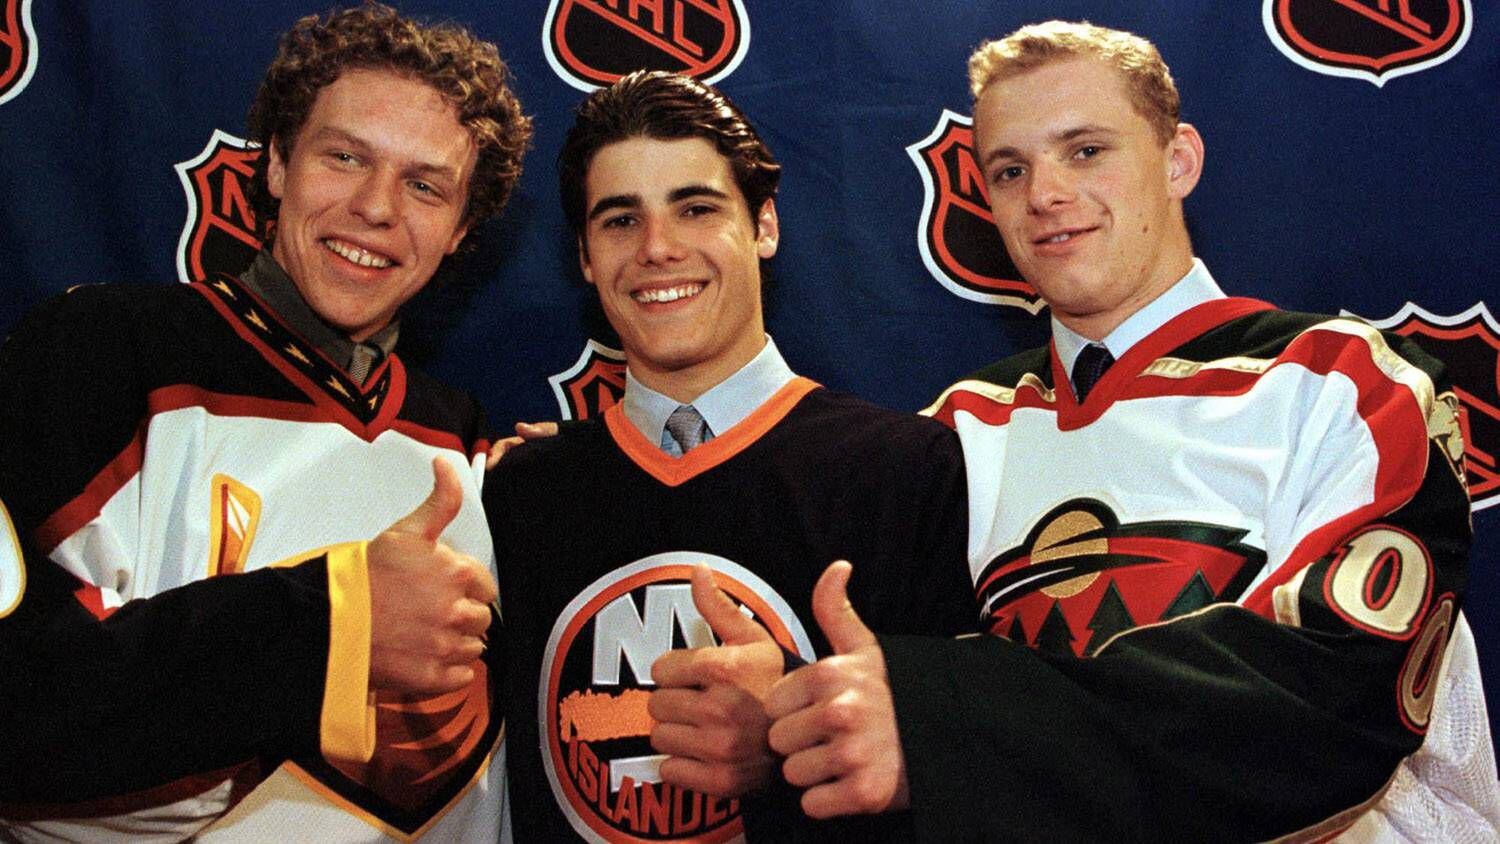 ДРАФТ НХЛ 2000 года. Первый номер драфта НХЛ. ДРАФТ НХЛ 2003 фото. Ре ДРАФТ НХЛ. Первый номер драфта